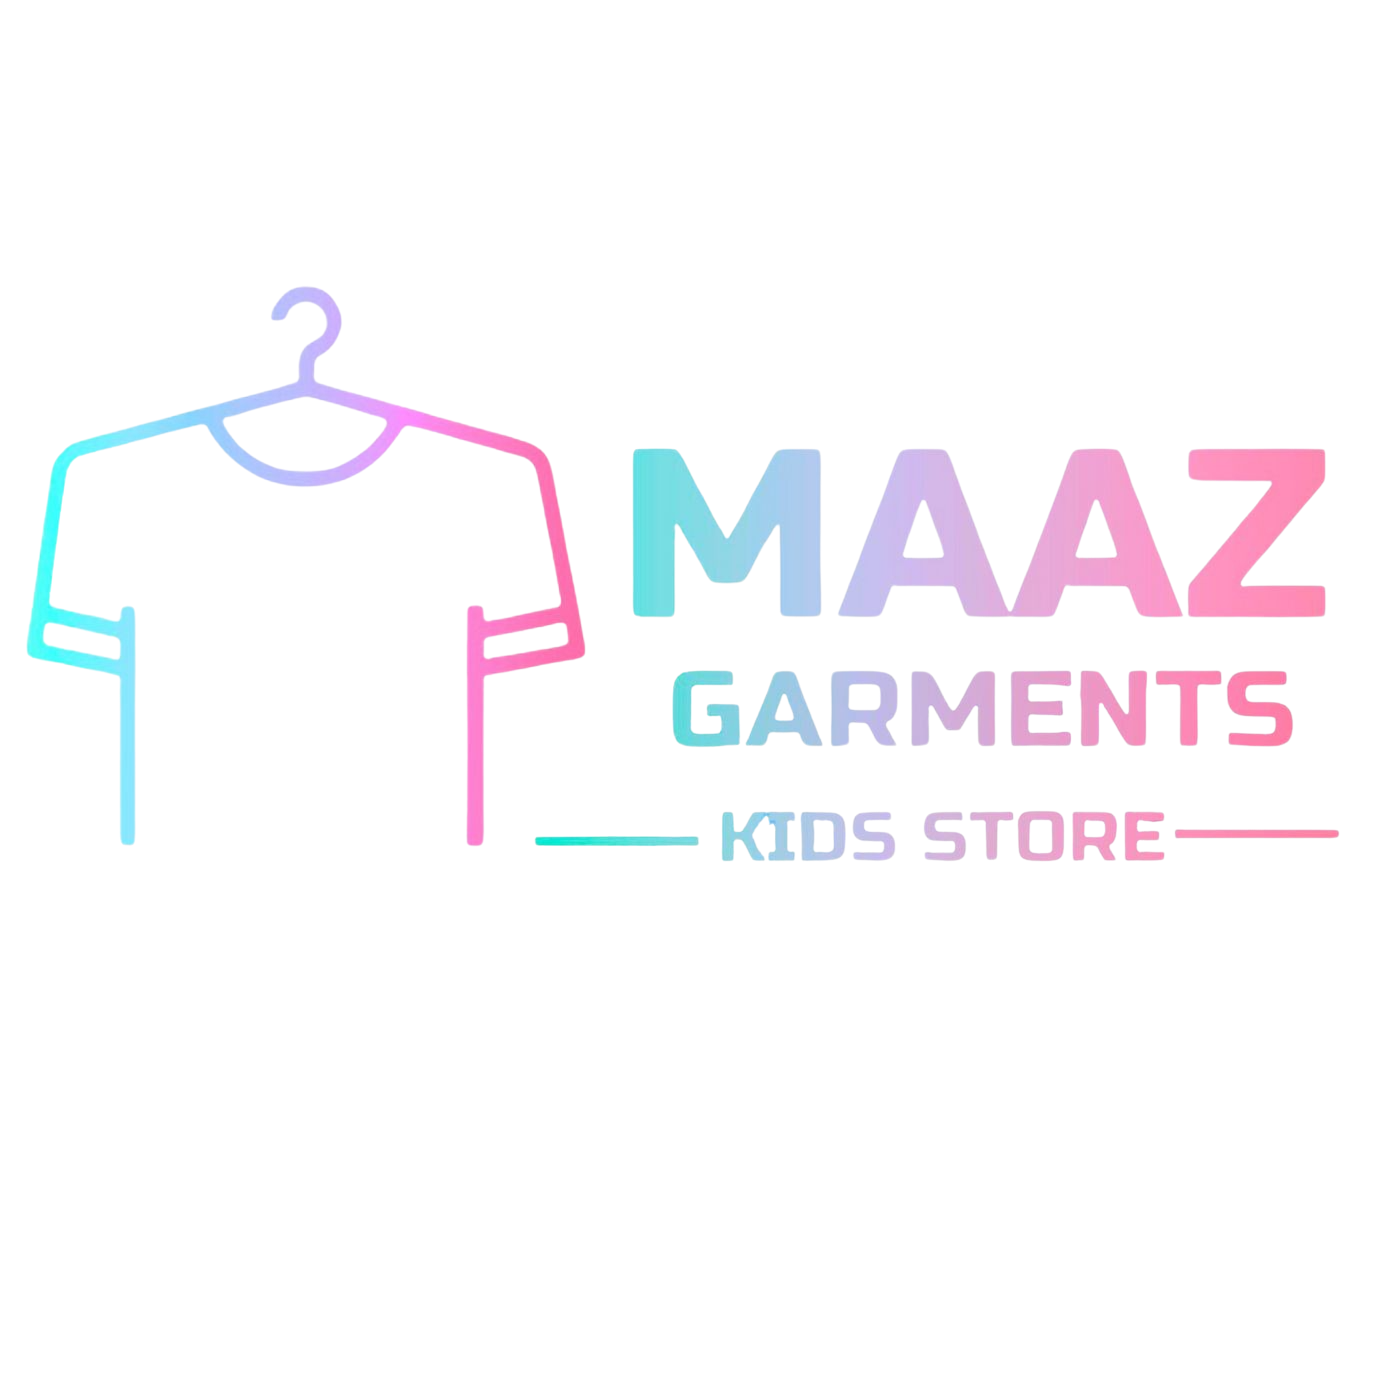 Maaz Garments